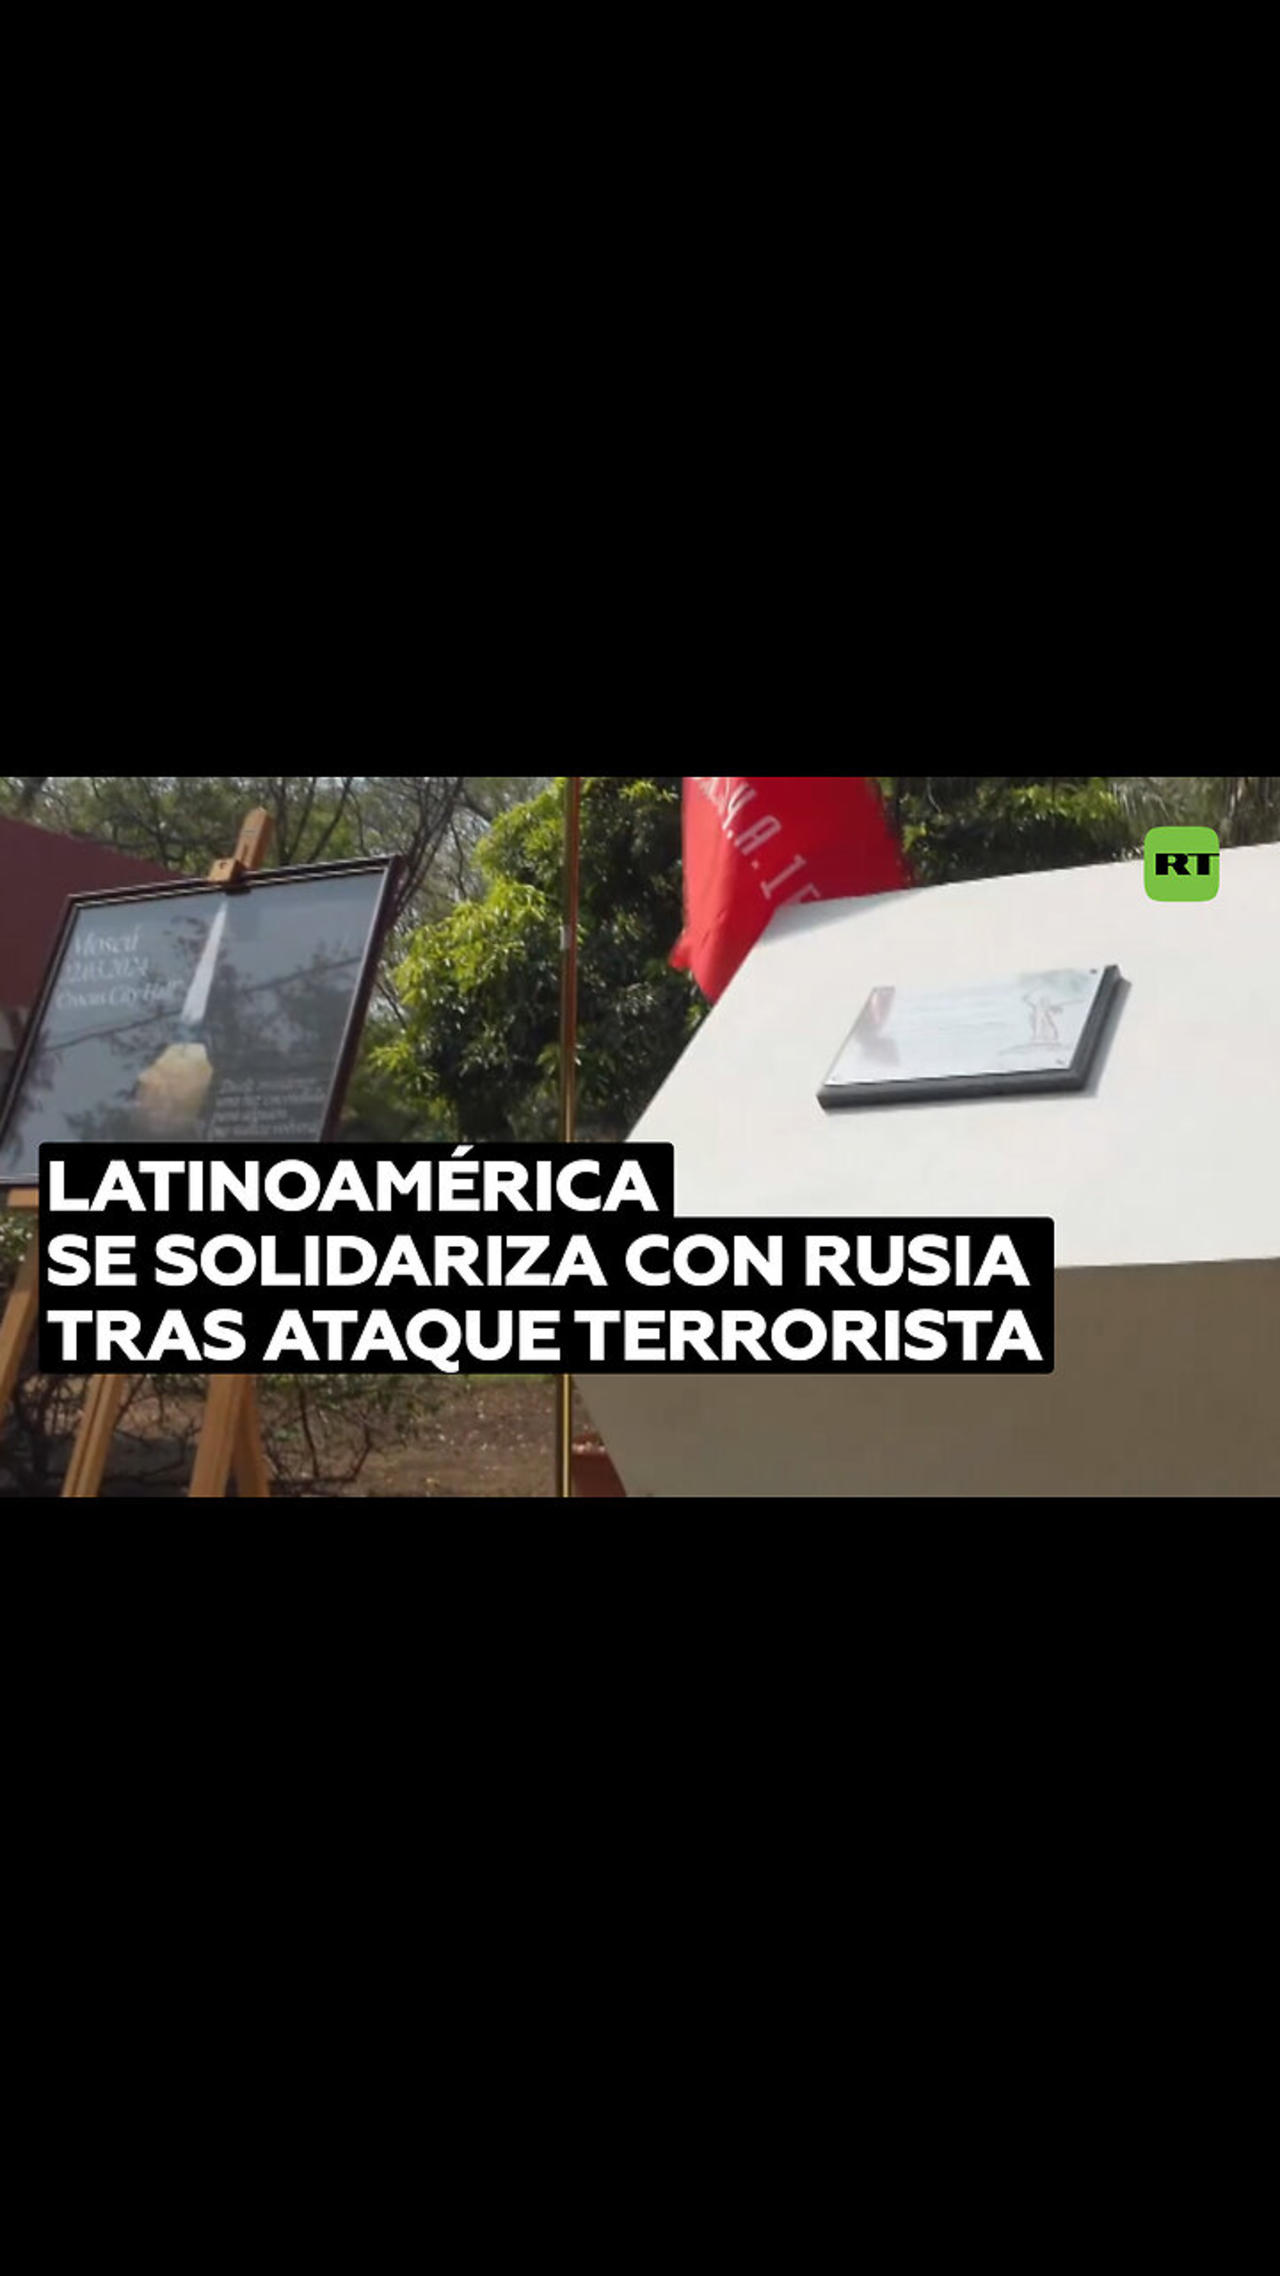 Desde Latinoamérica expresan condolencias al pueblo ruso tras el atentado en Moscú